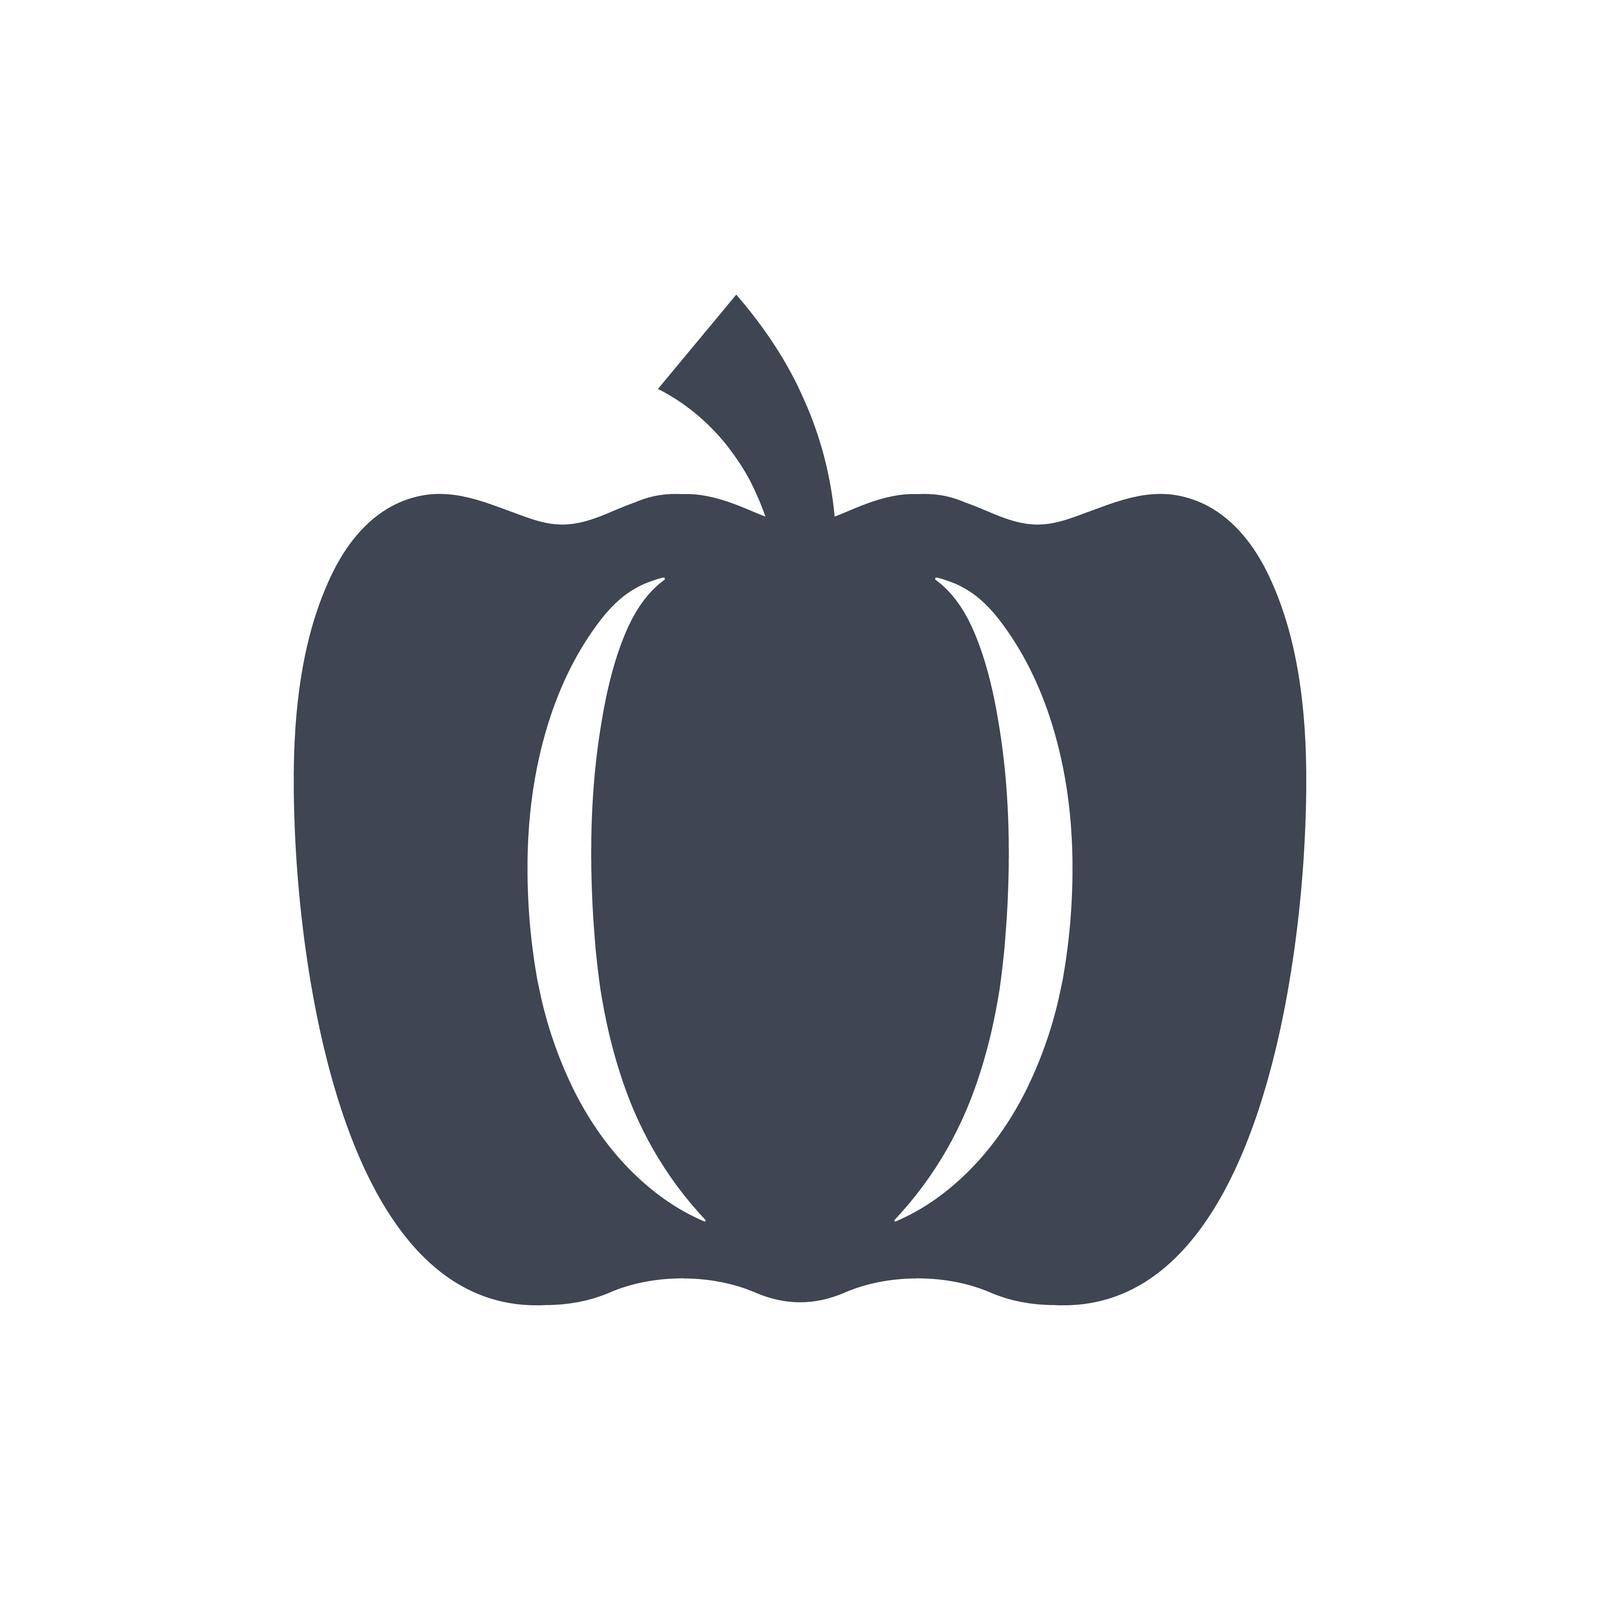 Pumpkin icon by delwar018